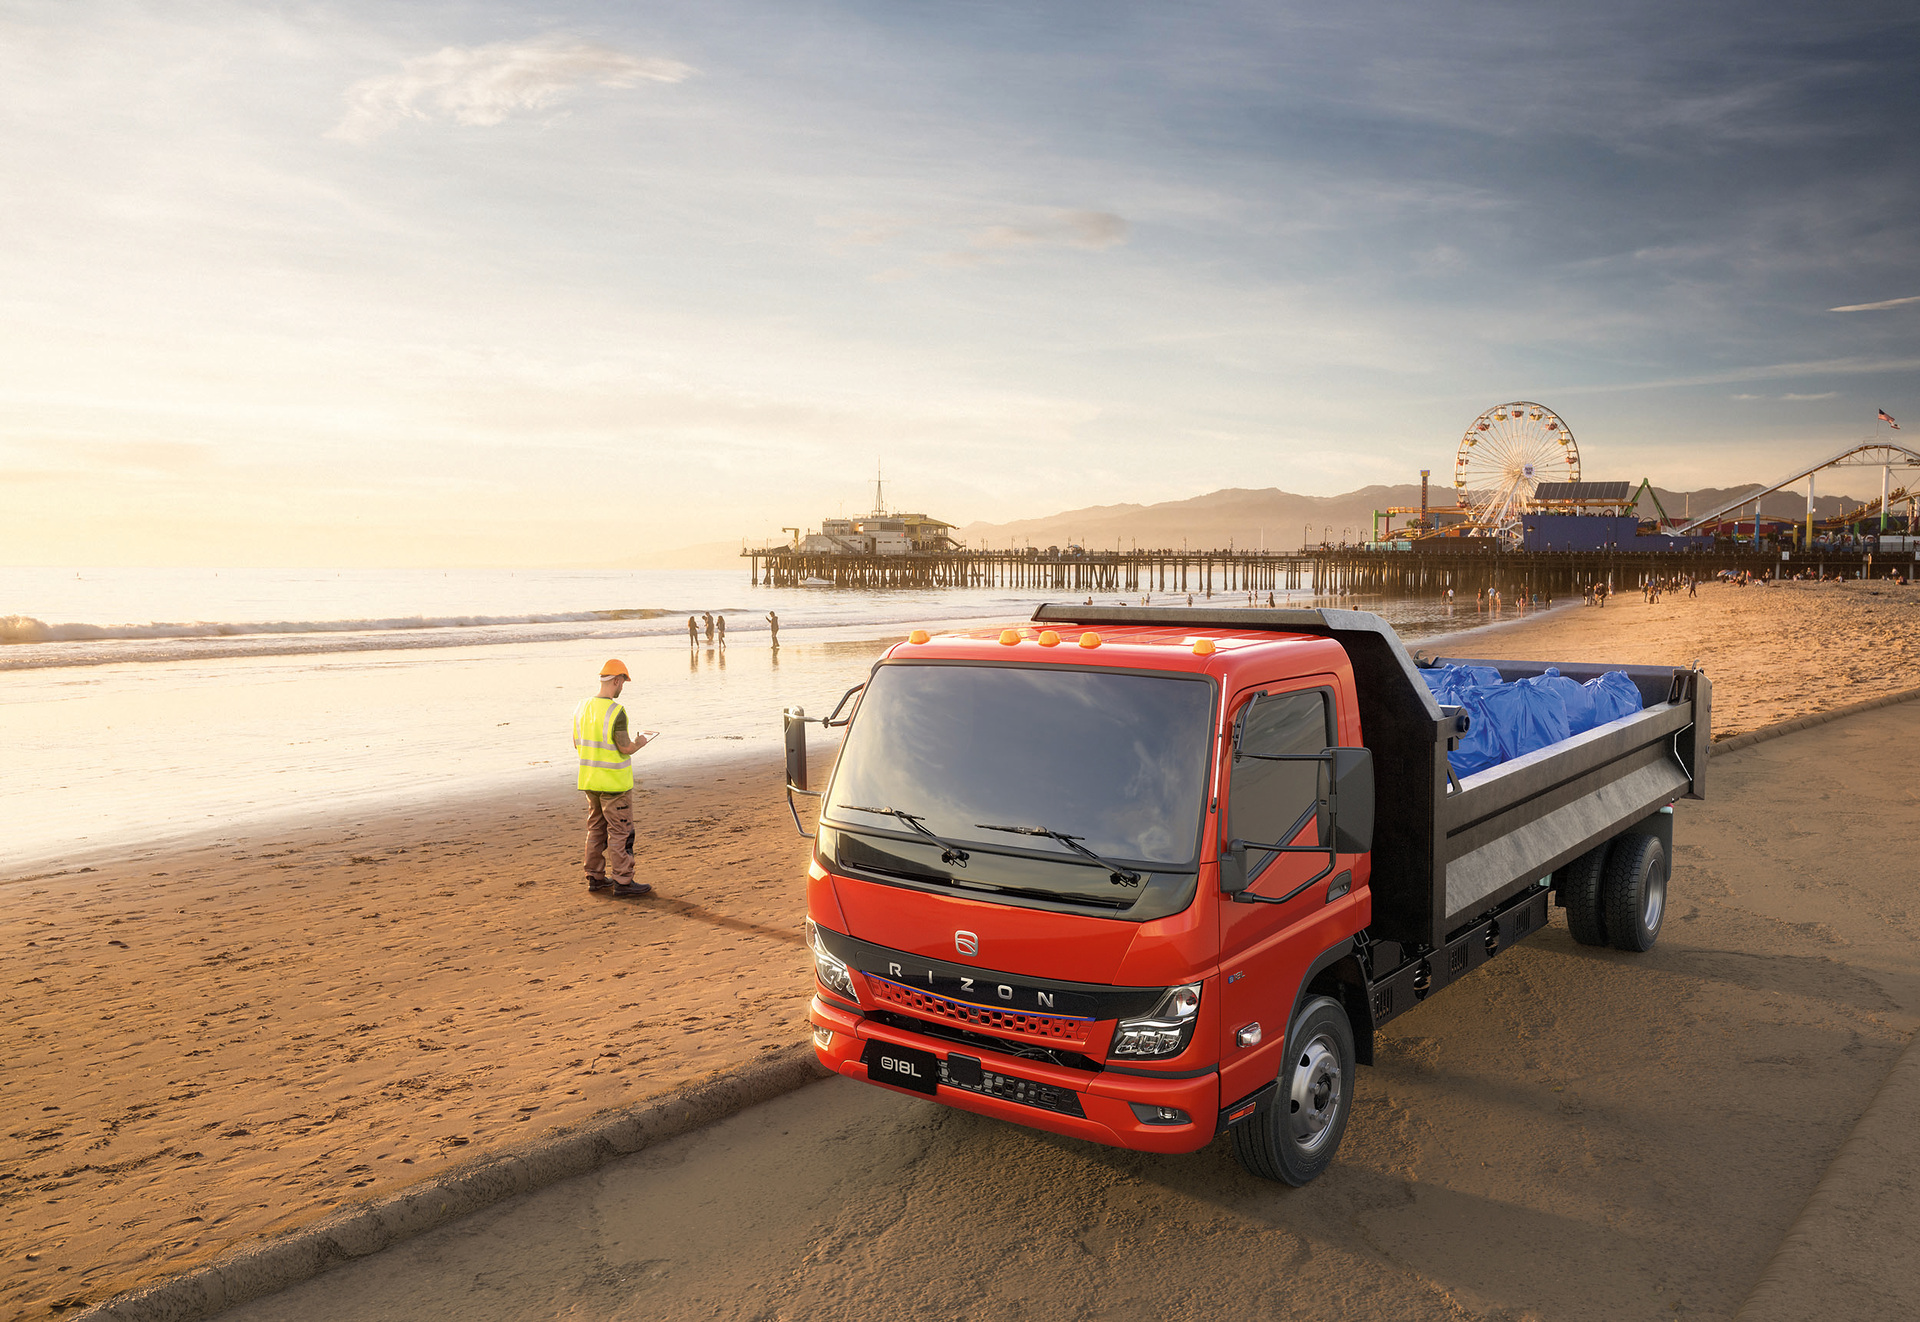 Daimler Truck präsentiert mittelschwere Elektro-Lkw der Marke RIZON für den US-amerikanischen Markt